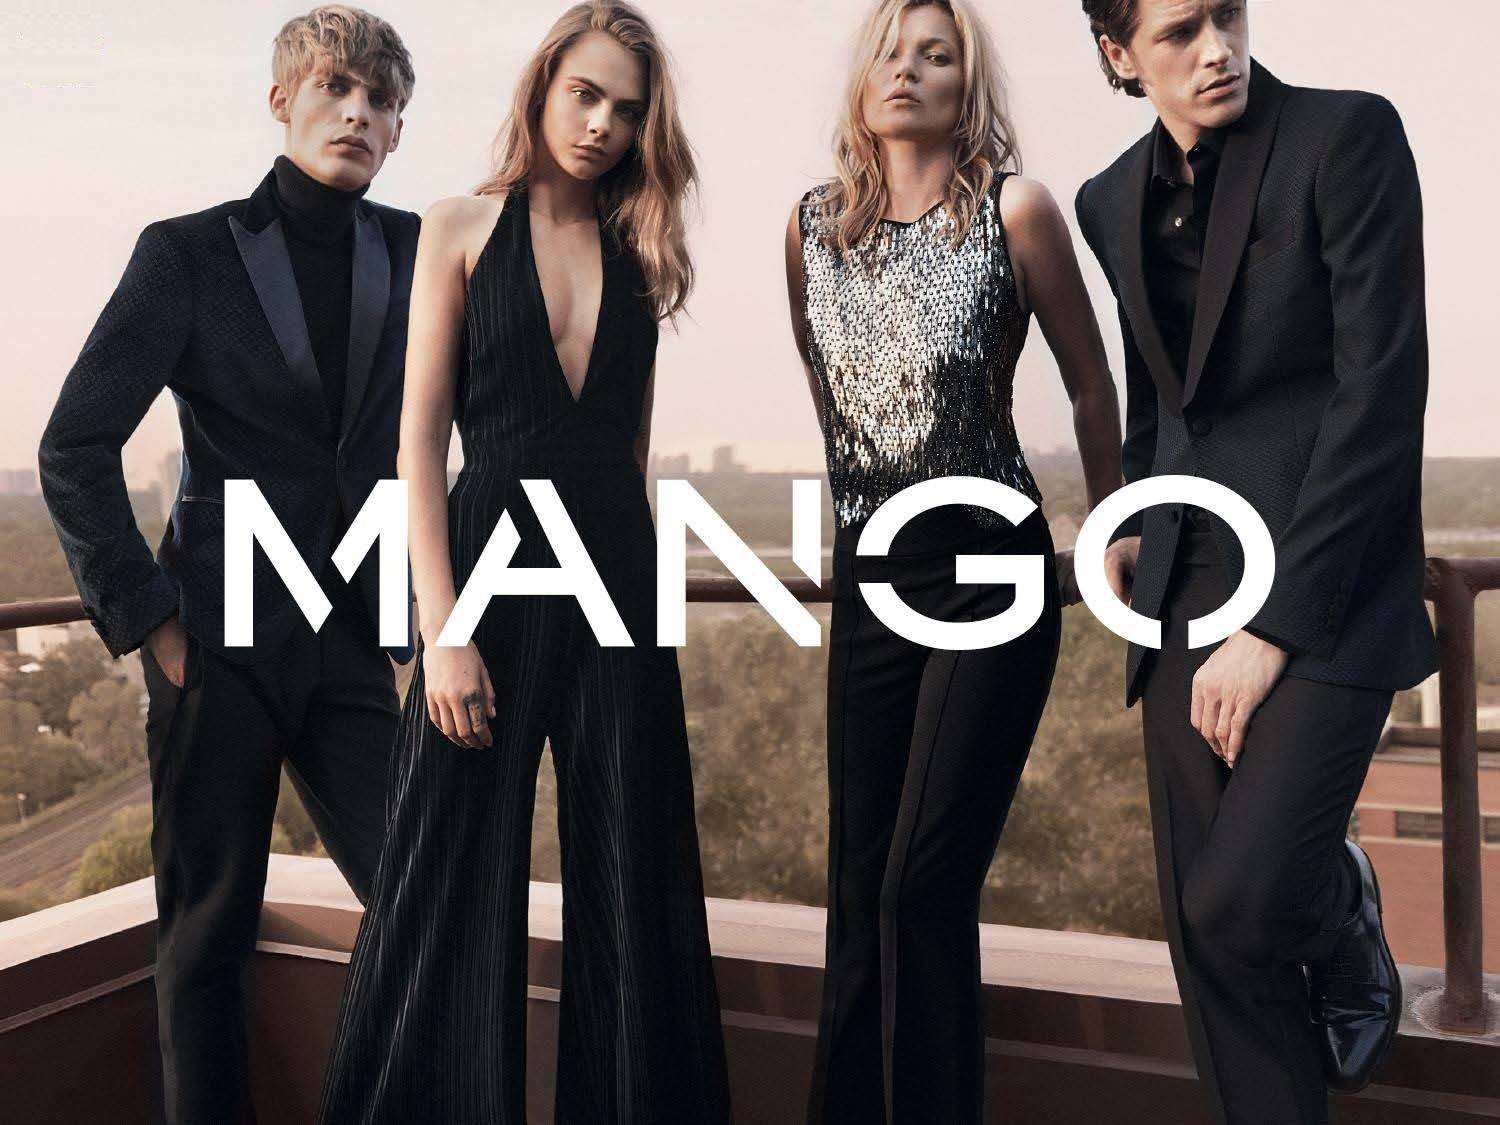 mango là thương hiệu thời trang thanh lịch